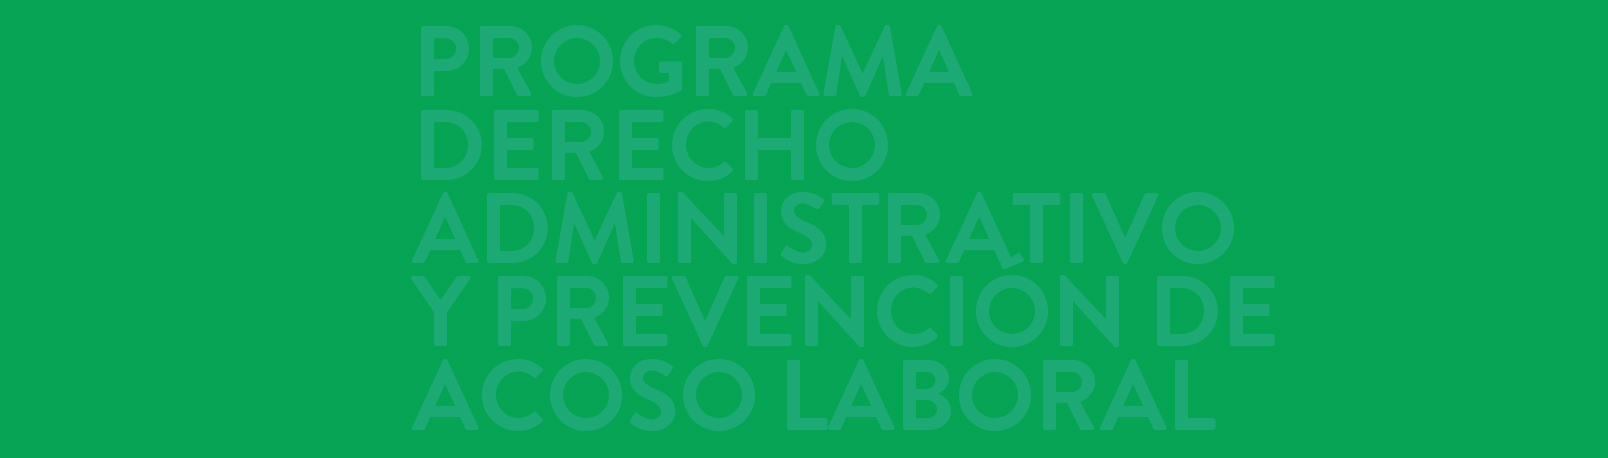 Programa Derecho Administrativo y Prevención del Acoso Laboral